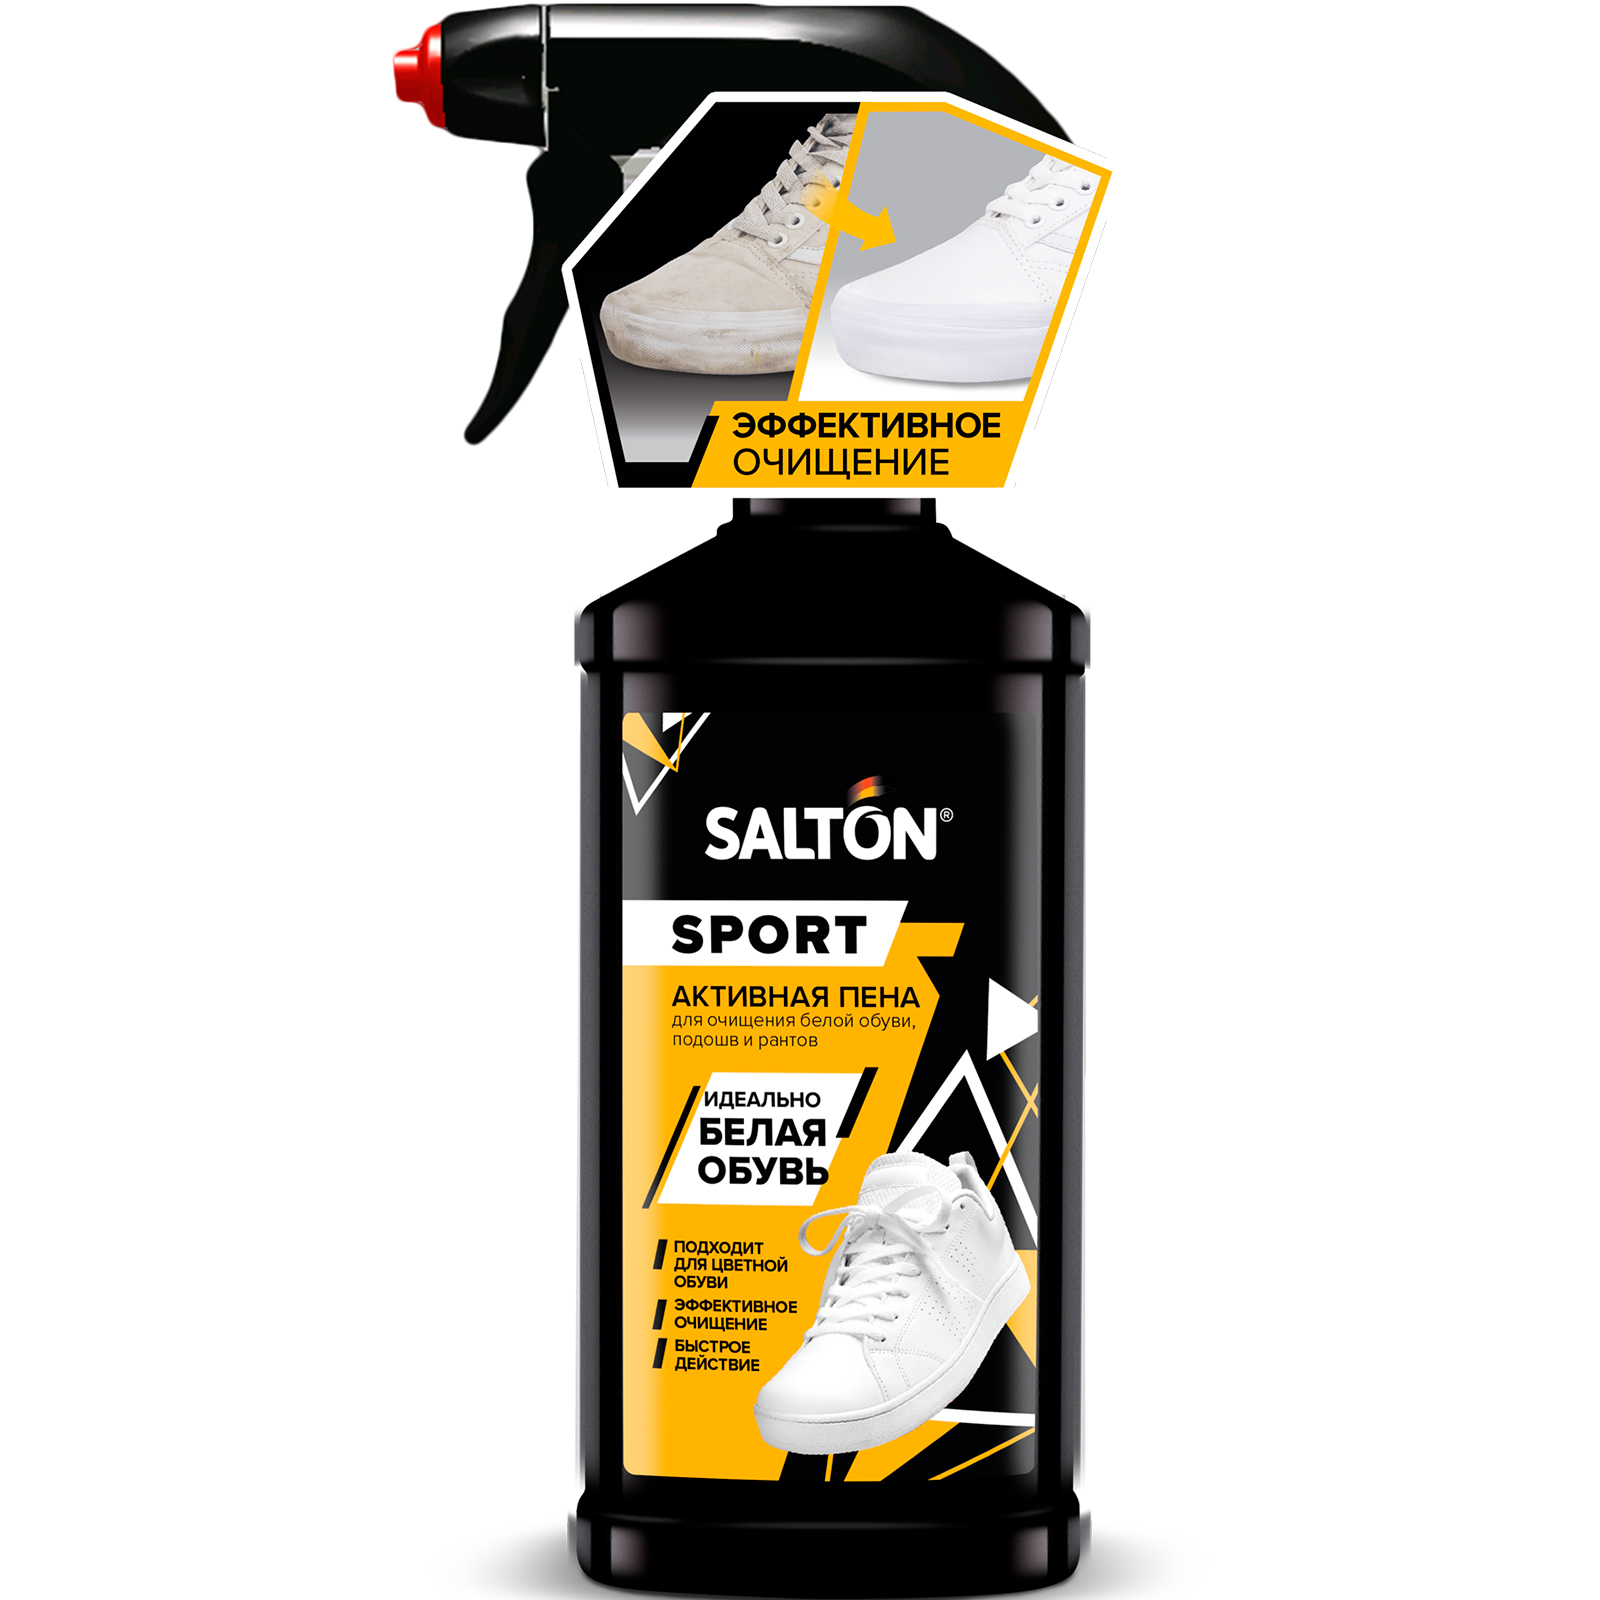 Очиститель Salton Sport для спортивной обуви, боковин и подошв Активная пена, 200 мл очиститель разводов для обуви от соли и реагентов salton